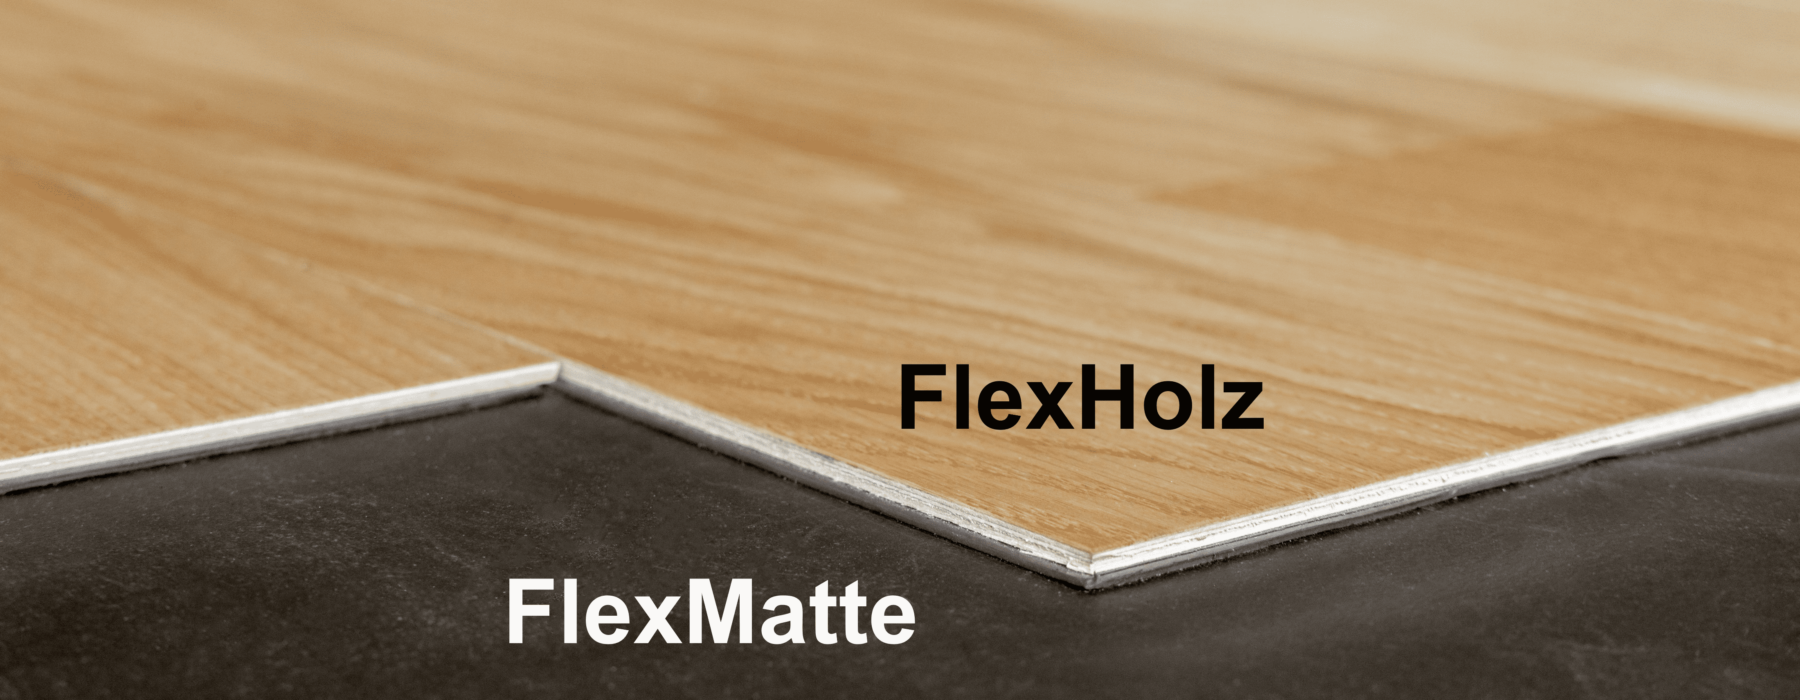 FlexHolz_FlexMatte_Foto